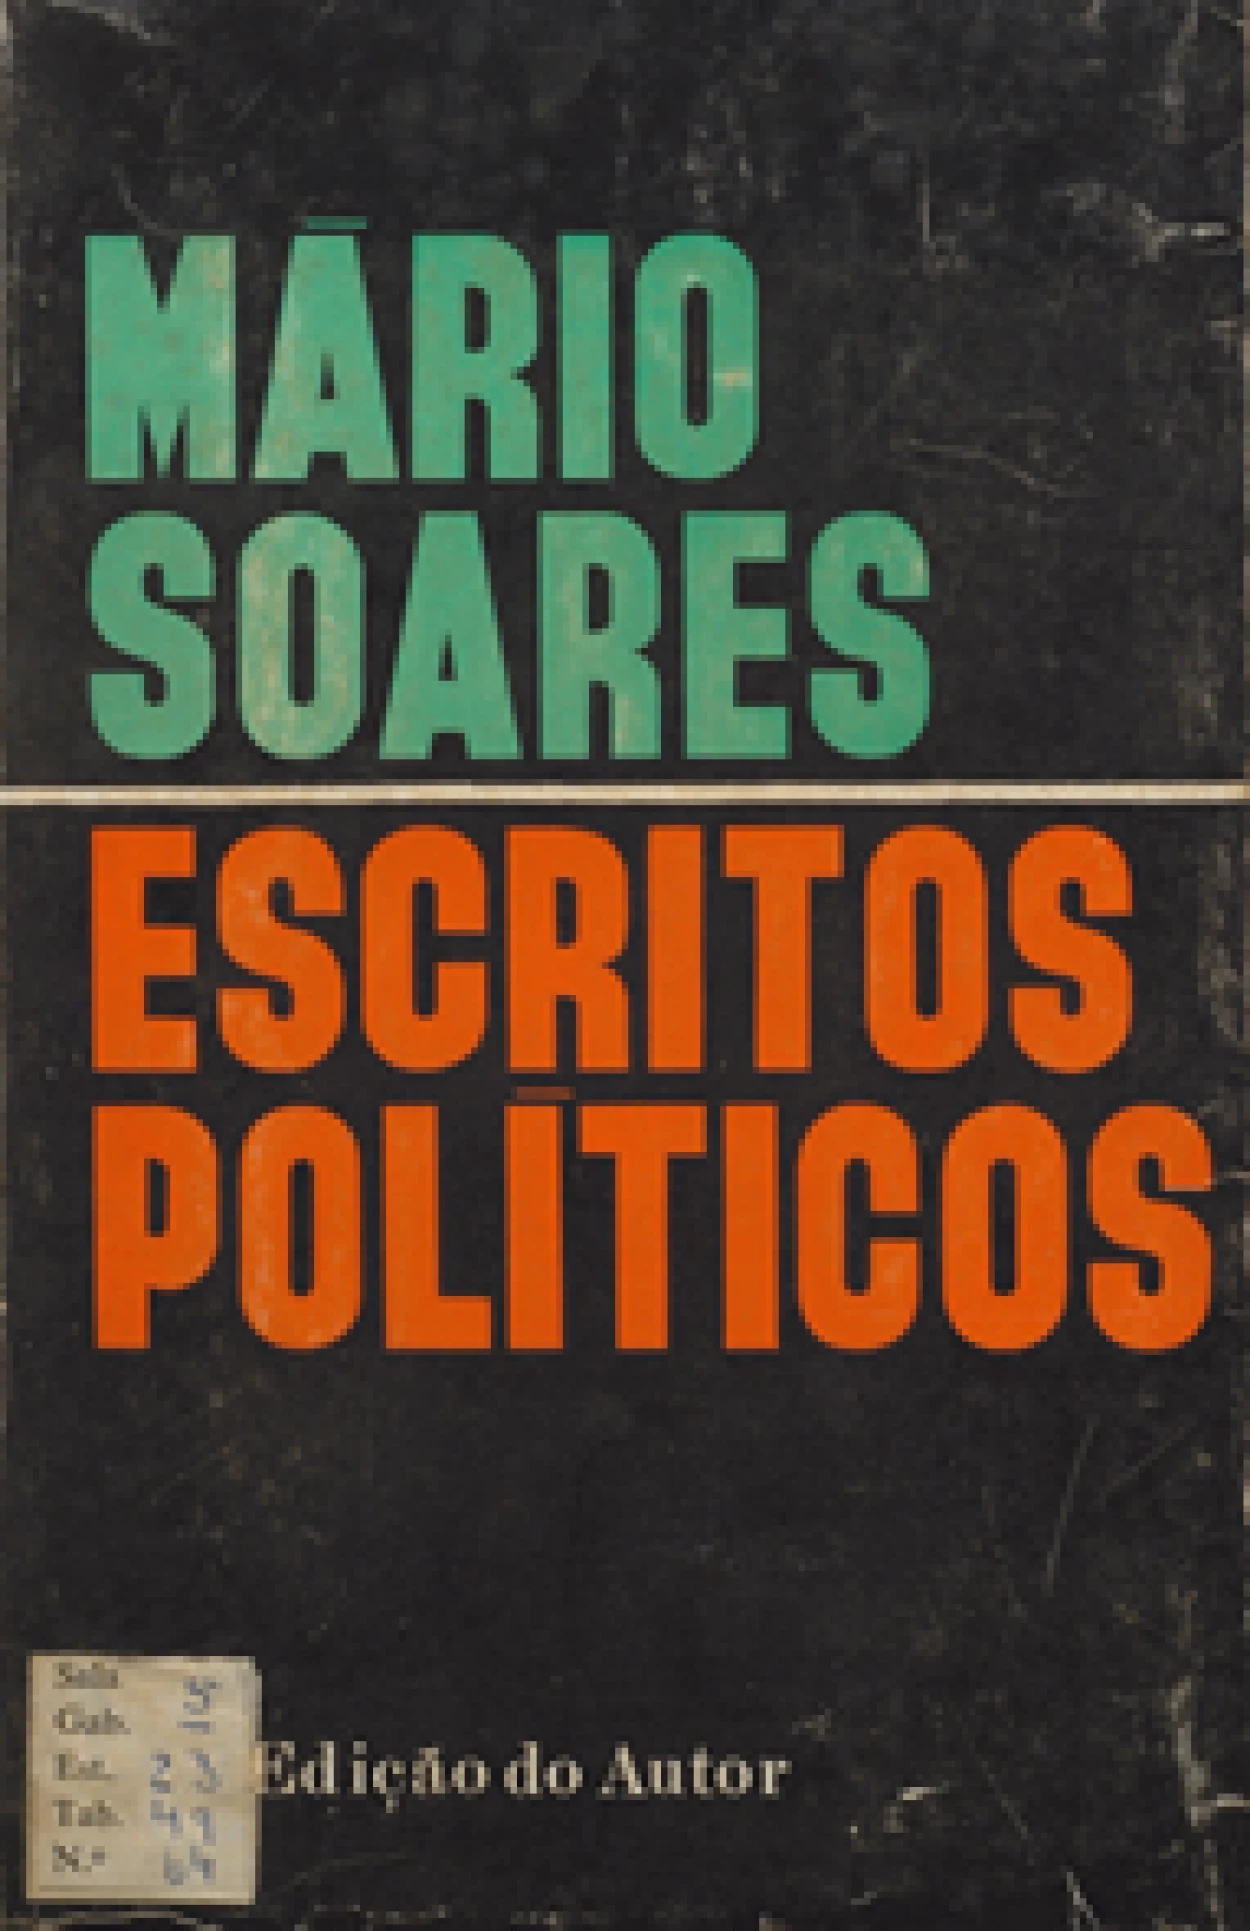 Mário Soares, 1924–2017
Escritos políticos.
Lisboa : Ed. do Aut., 1969.